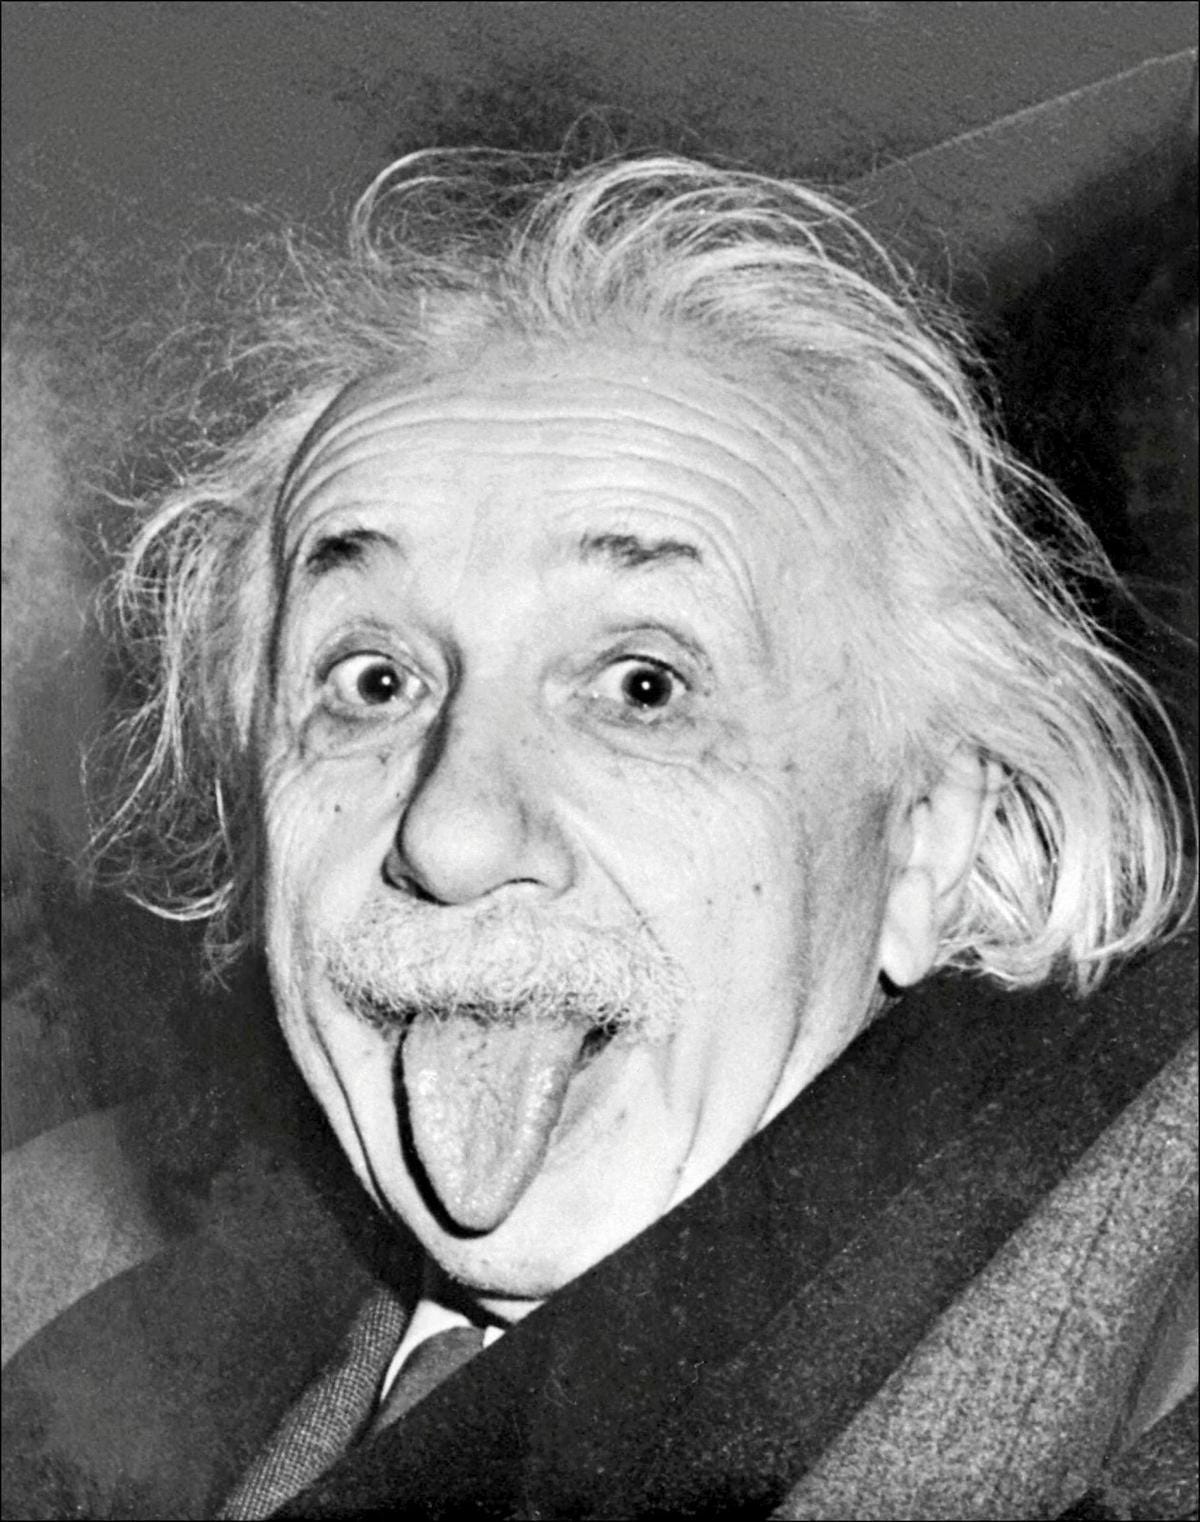 100 ans après son prix Nobel : sept choses à savoir sur Albert Einstein